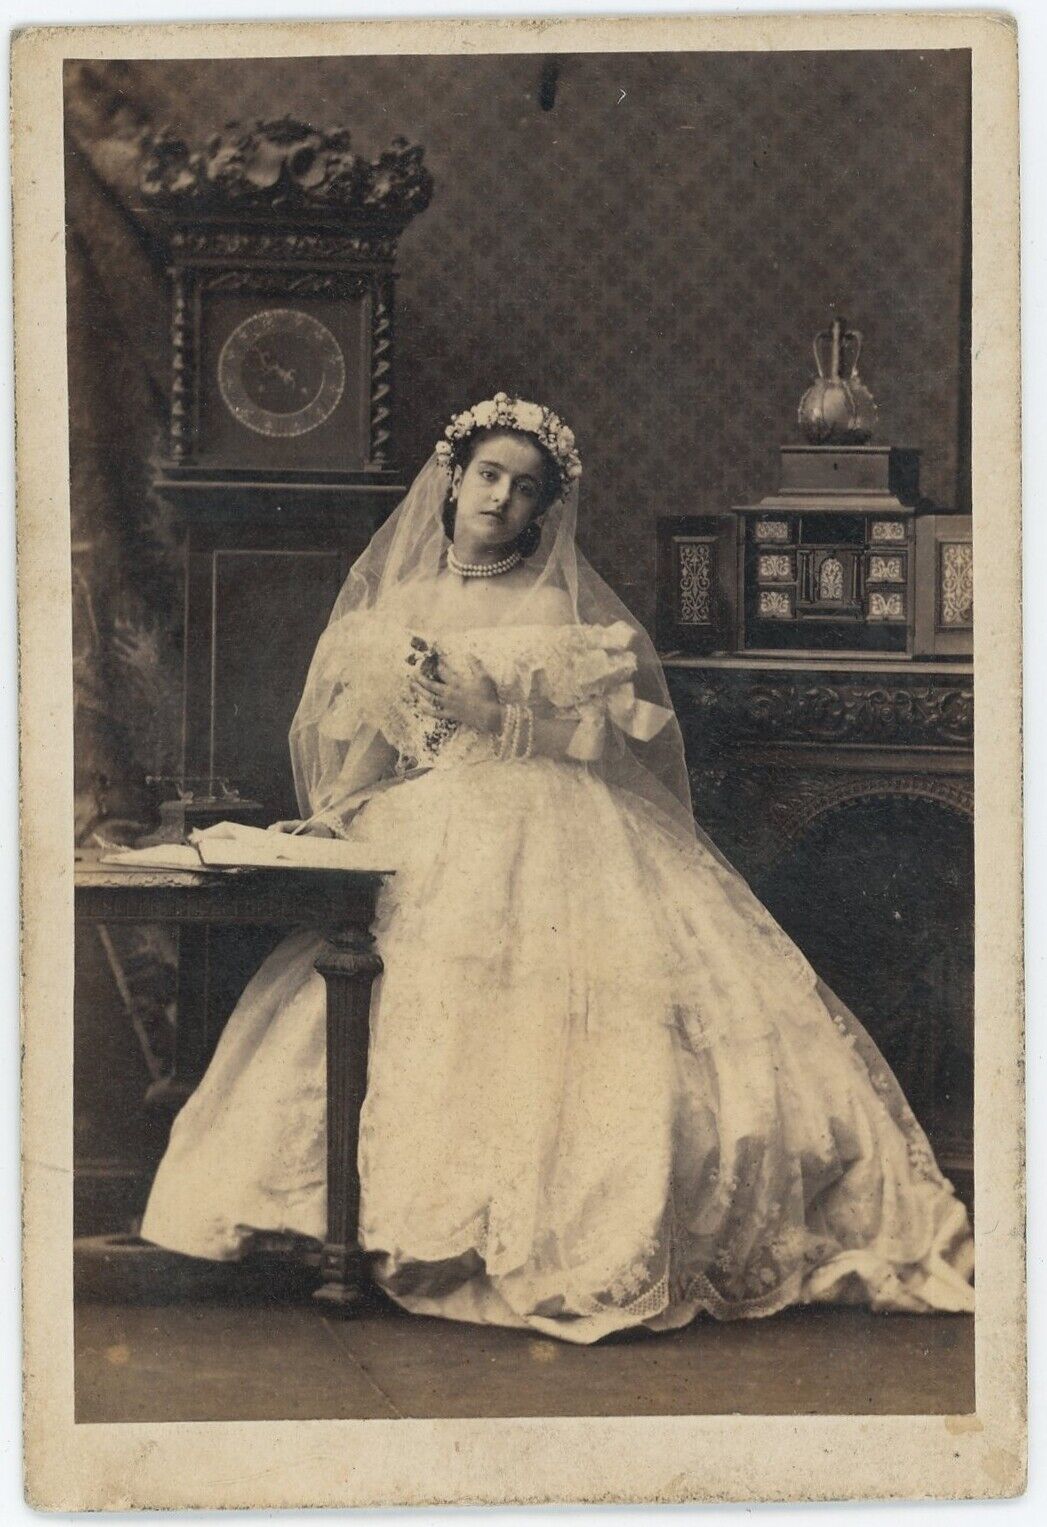 CDV circa 1865. Italian singer Adelina Patti by Camille Silvy.